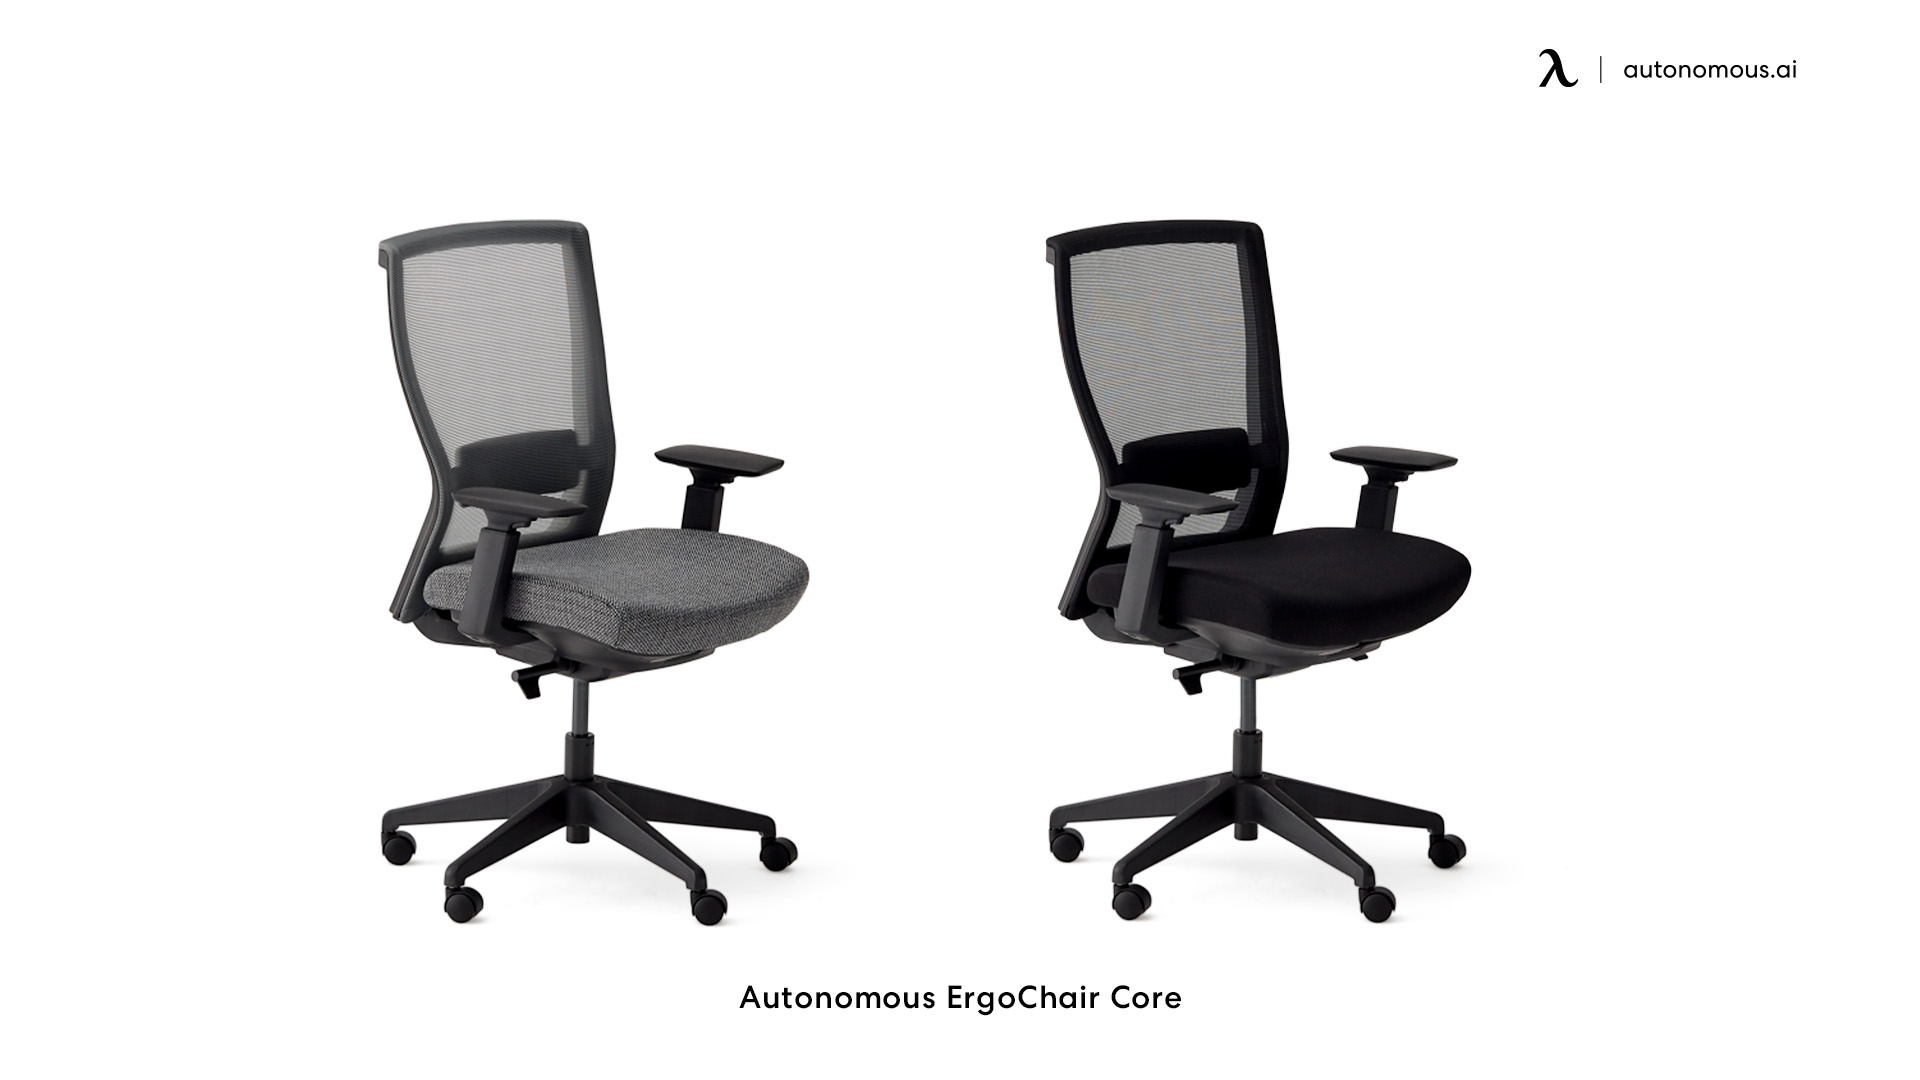 ErgoChair Core mid-back computer chair